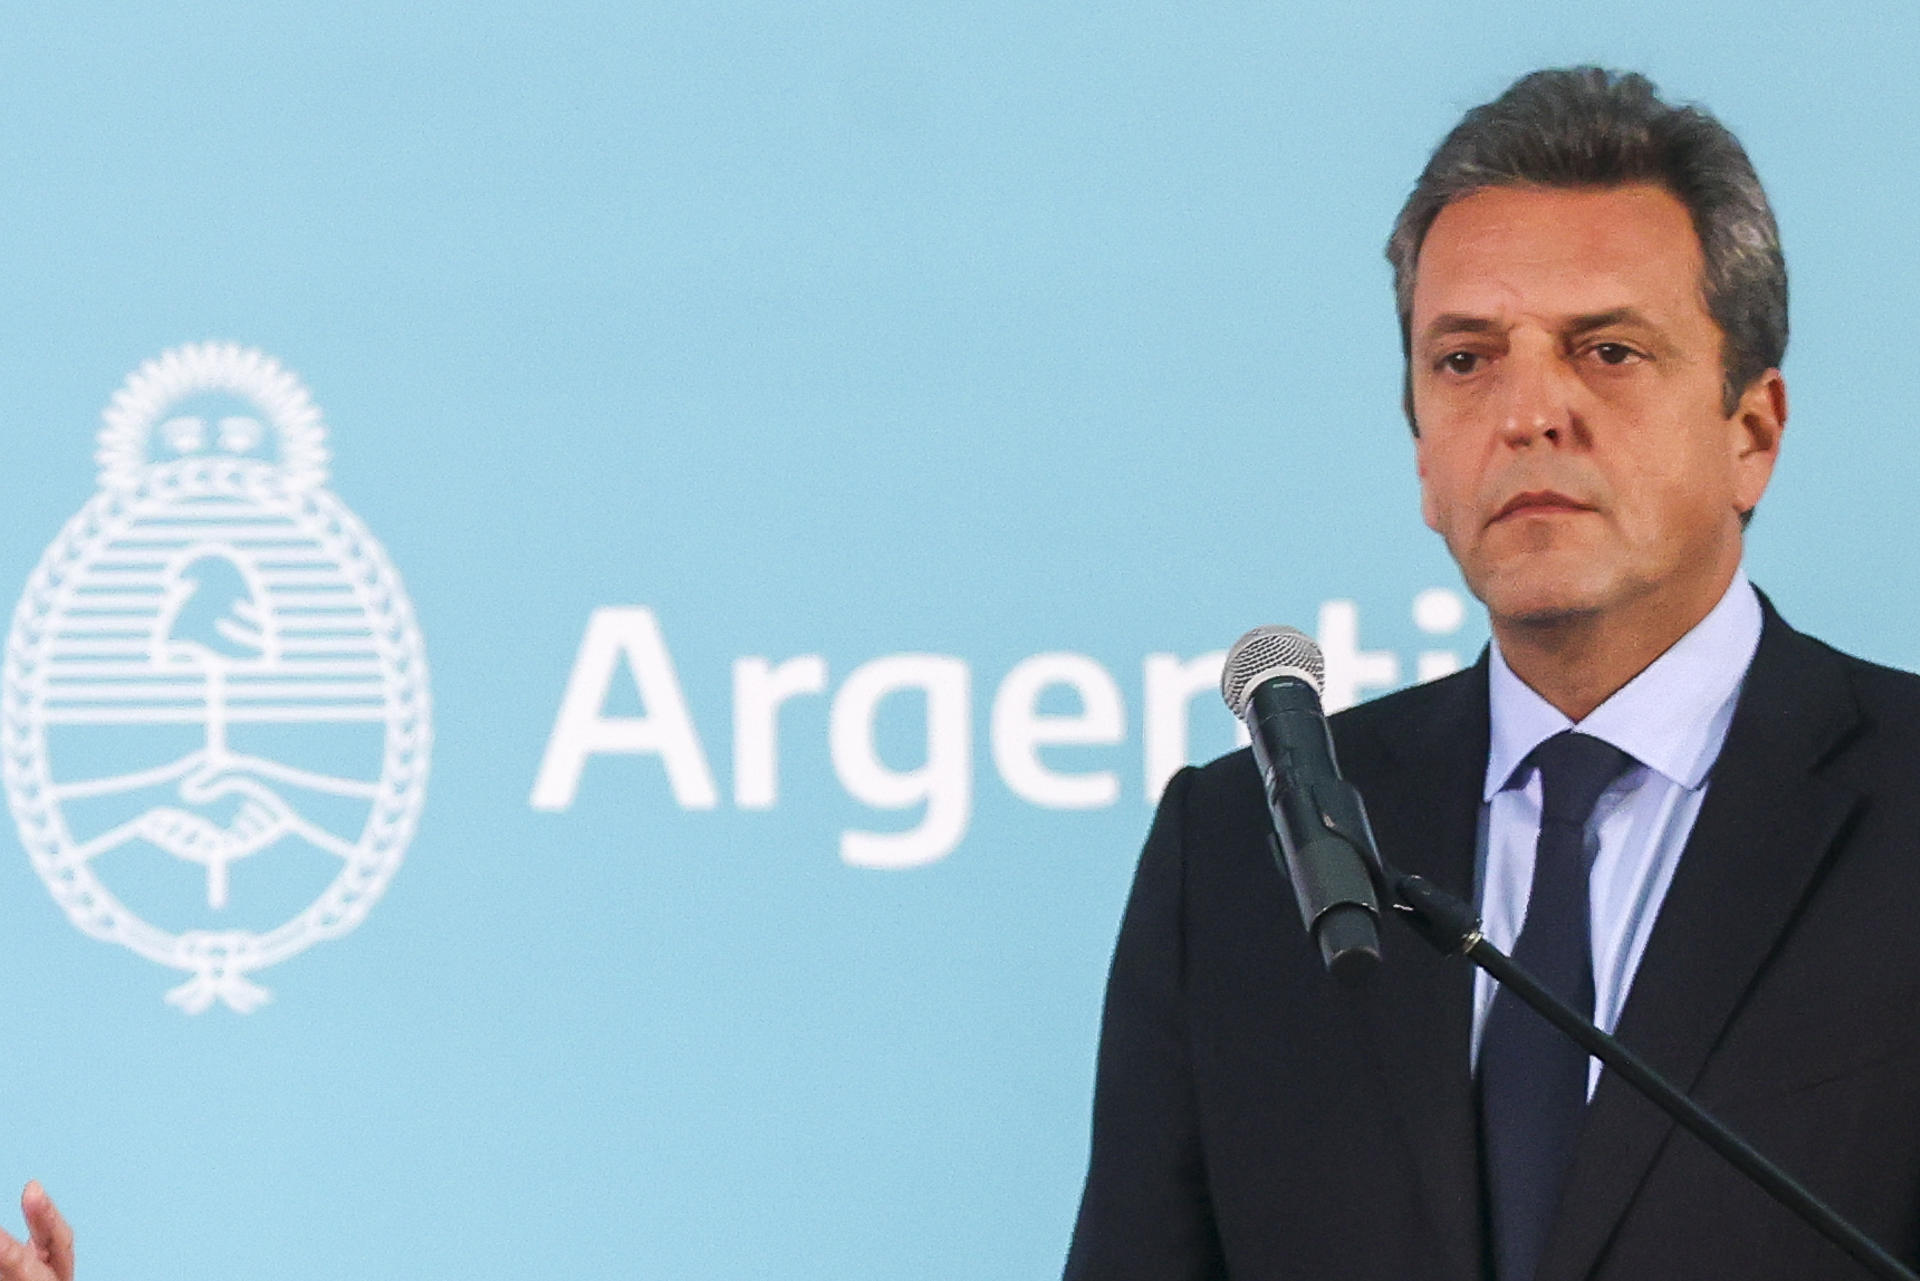 El ministro de Economía de Argentina, Sergio Massa, en una fotografía de archivo. EFE/Juan Ignacio Roncoroni